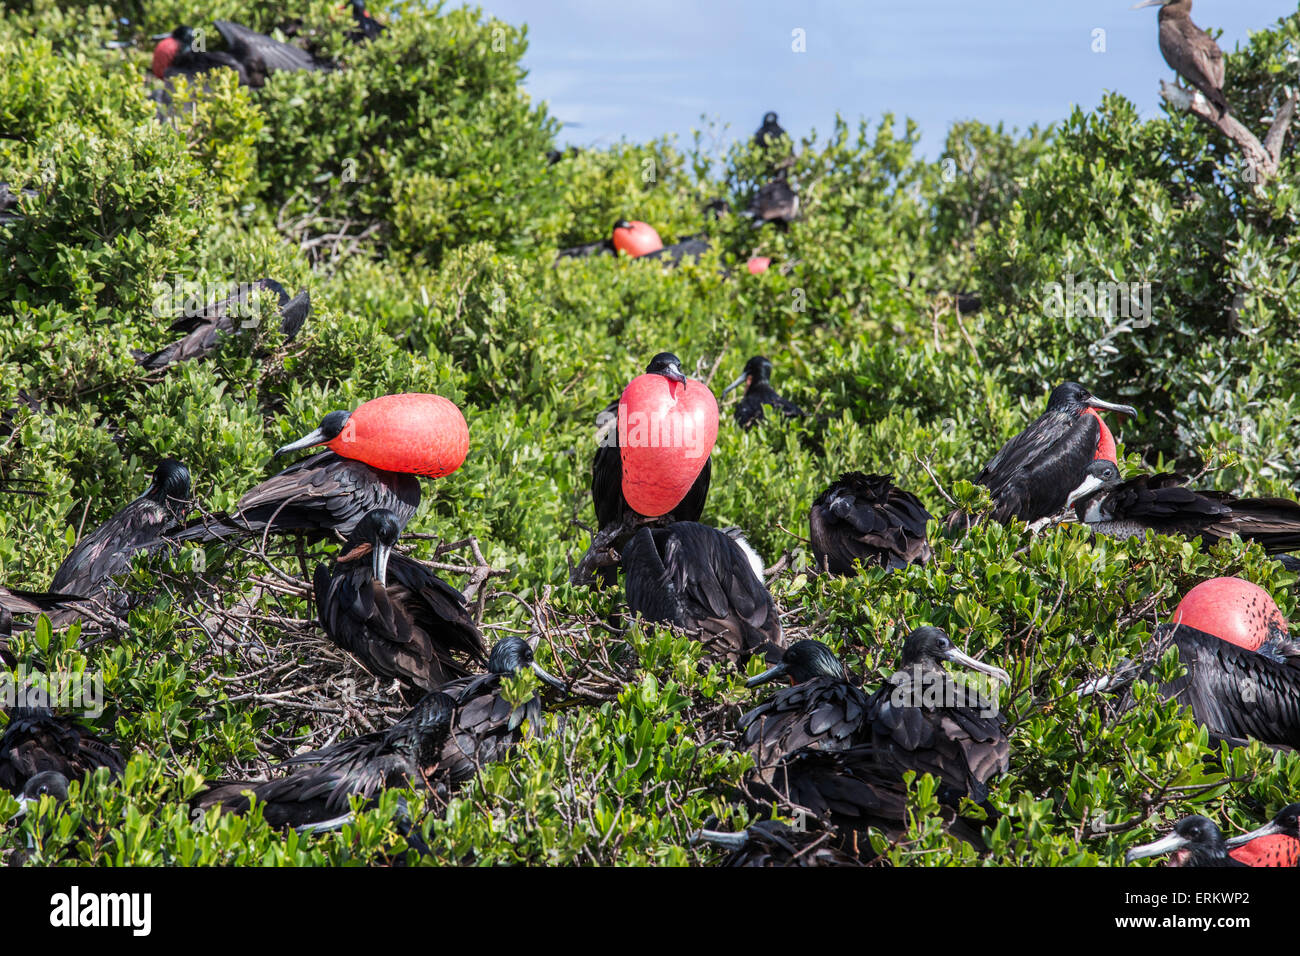 Un gruppo dei maschi di fregate con gola arrossata sacche sovrintende le femmine con pulcini per impedire attacchi da parte di predatori, Barbuda Foto Stock